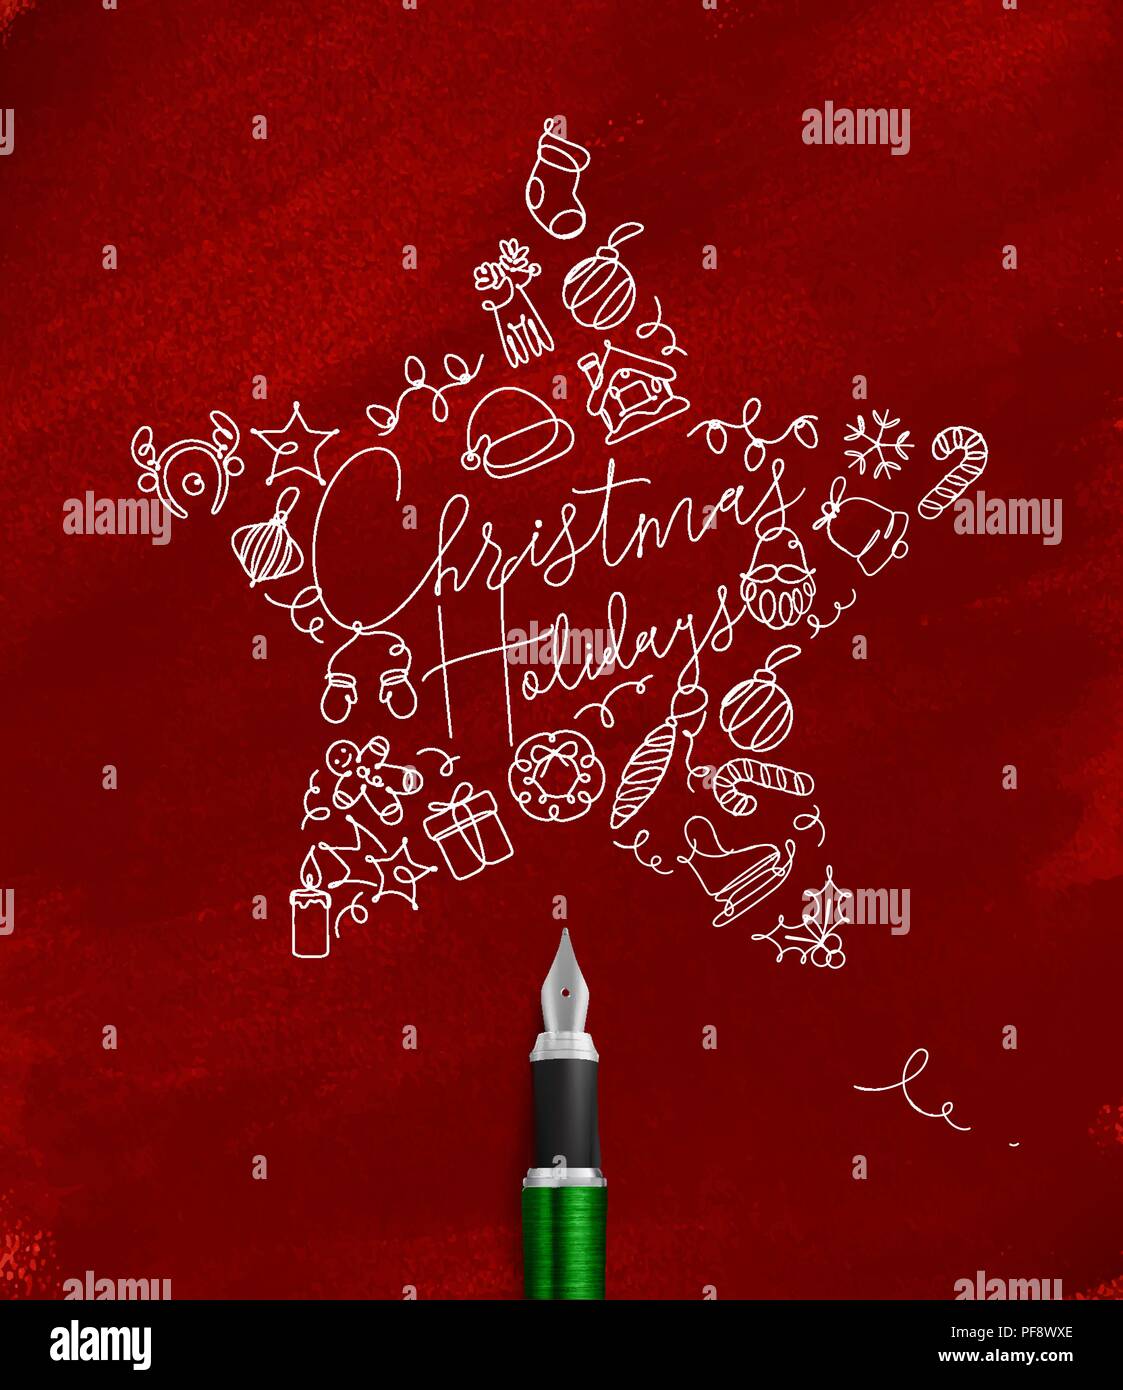 Weihnachtsbaum Spielzeug star Schriftzug urlaub Zeichnen mit Pen-Leiter auf rotem Hintergrund Stock Vektor